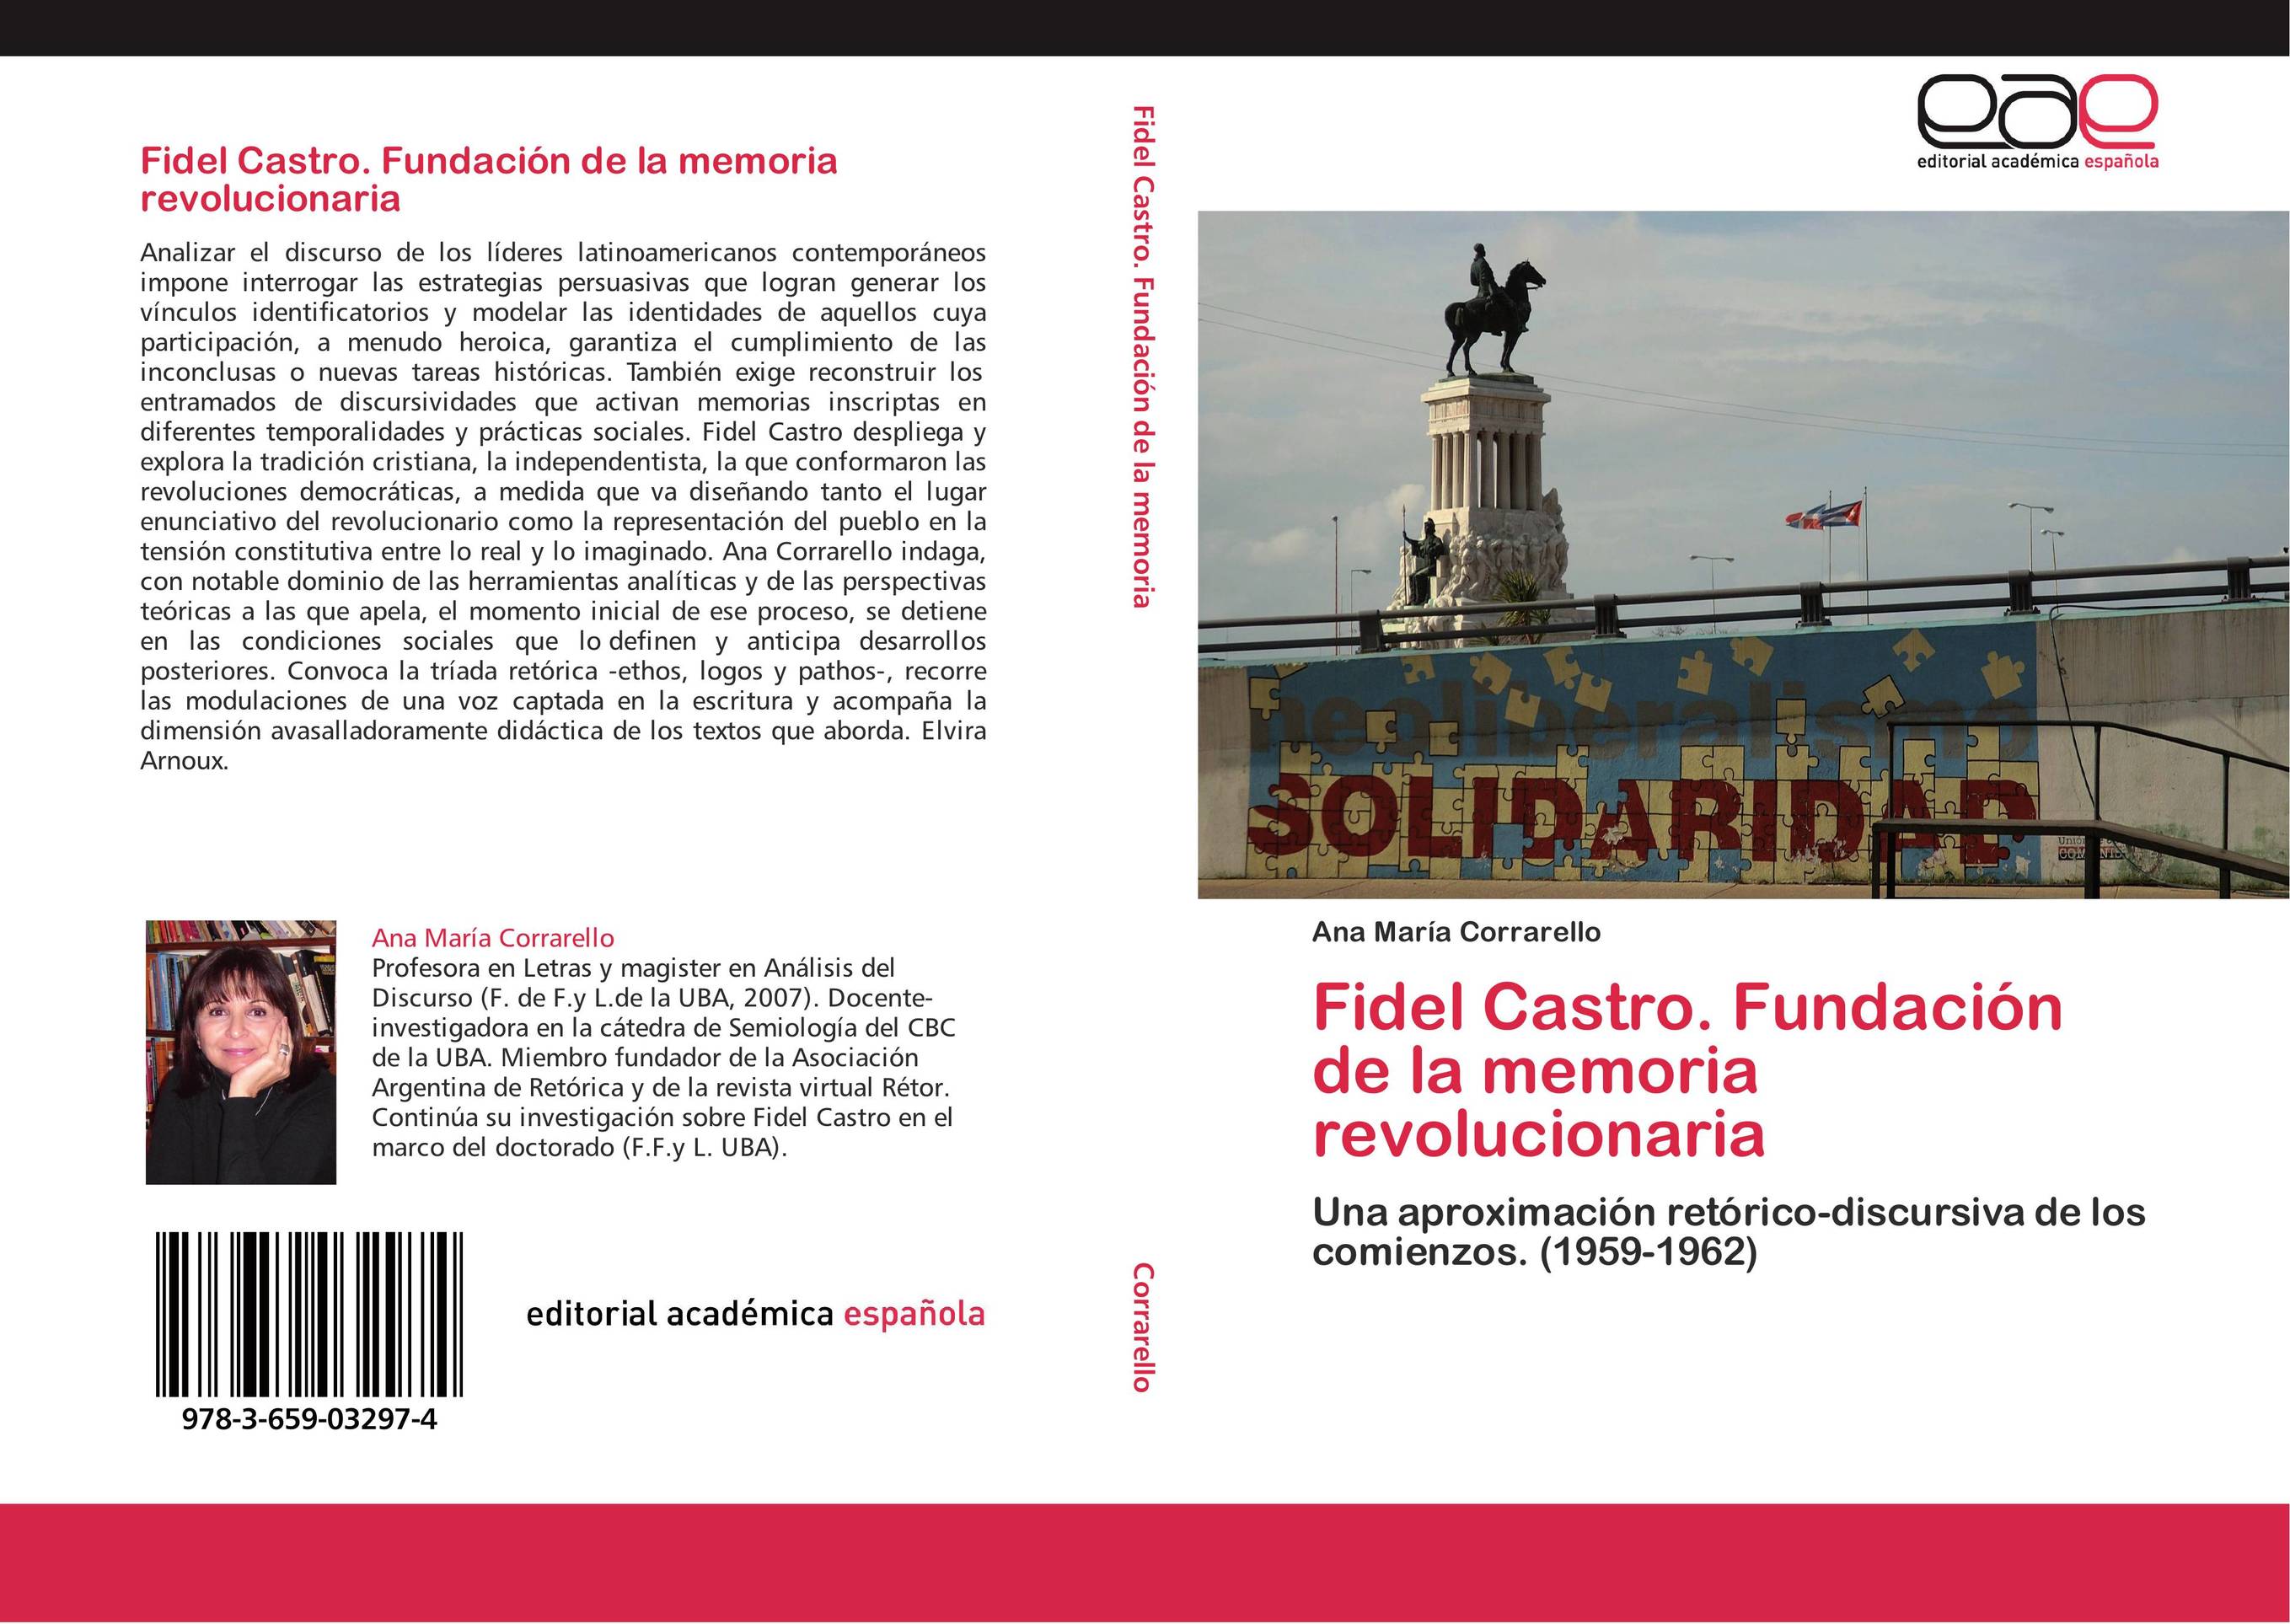 Fidel Castro. Fundación de la memoria revolucionaria